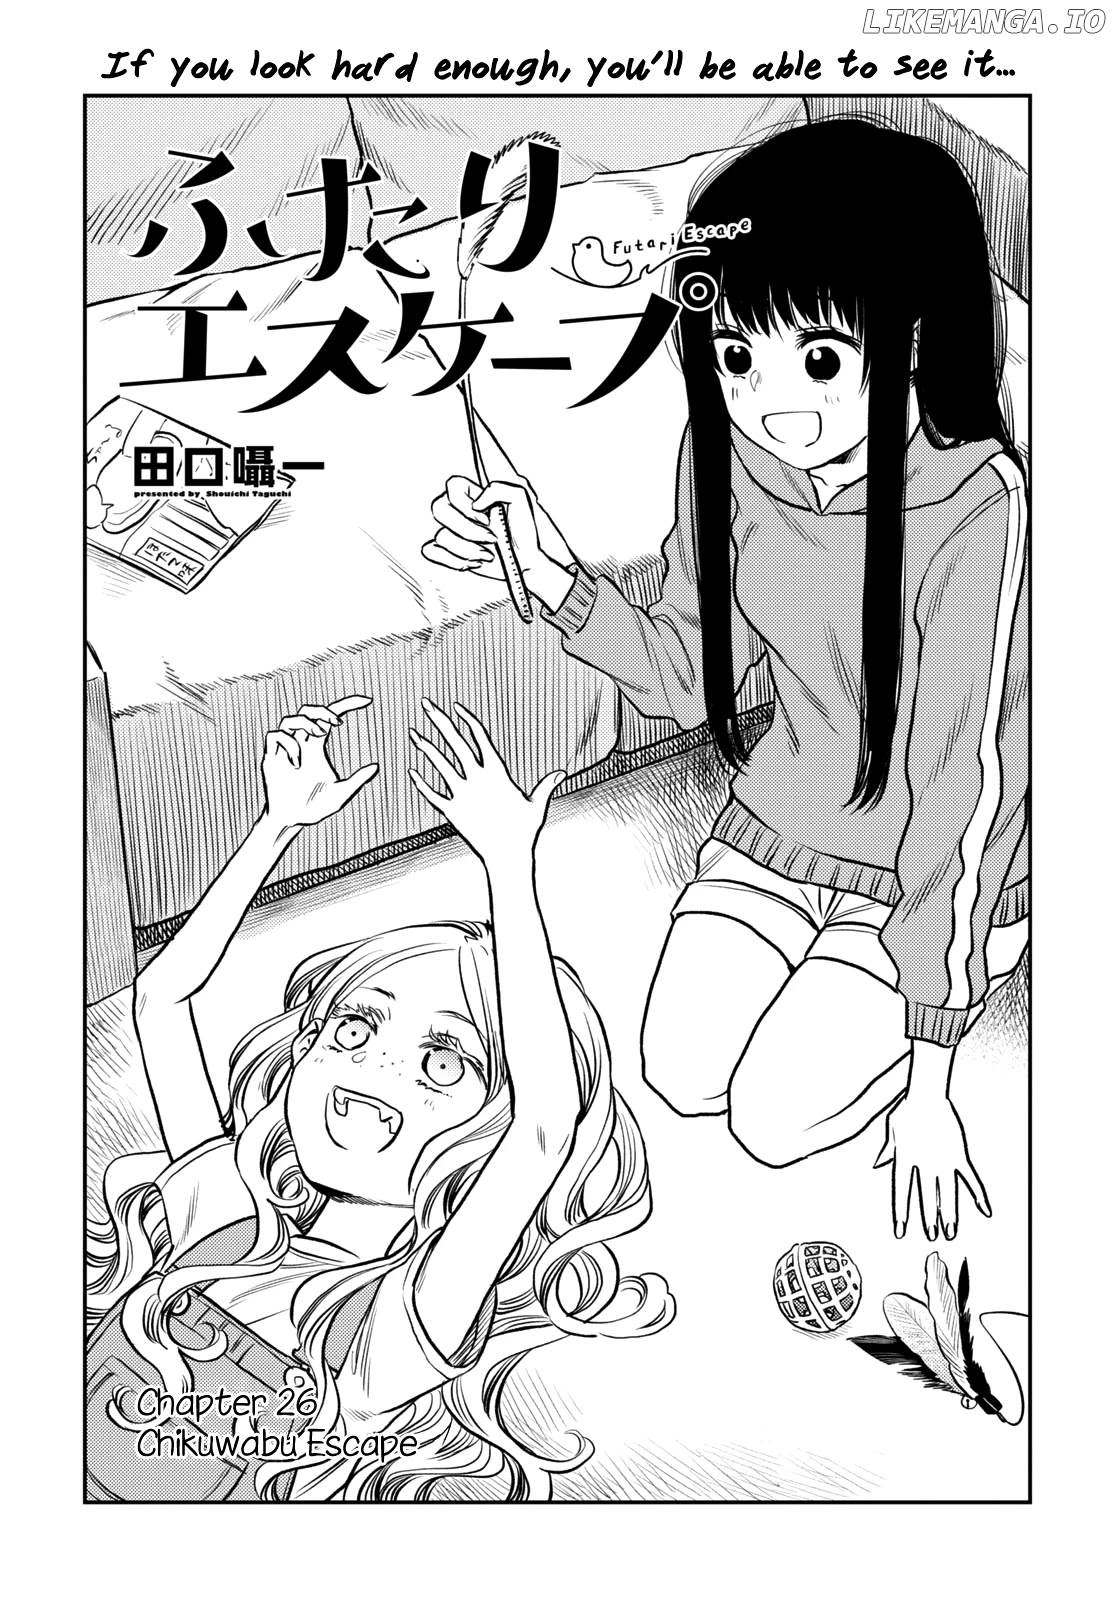 Futari Escape chapter 26 - page 1